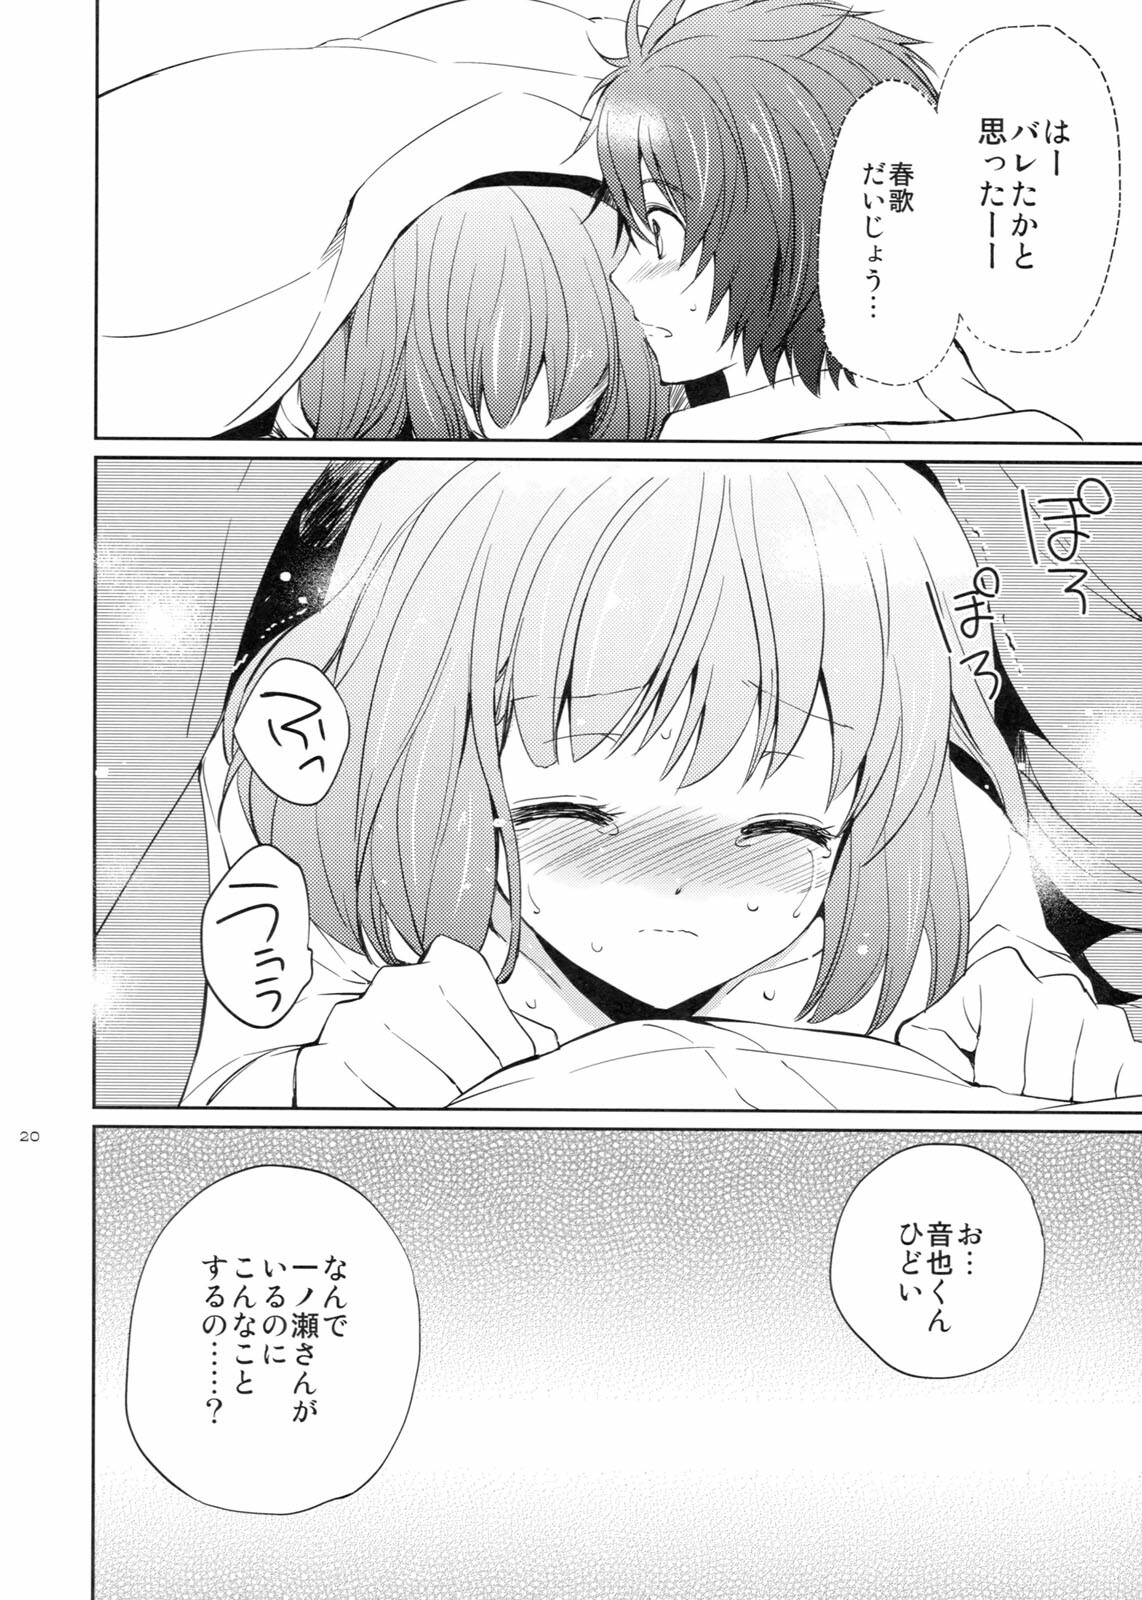 (SC53) [Kurimomo (Tsukako)] evergreen + Omake (Uta no Prince-sama) page 19 full